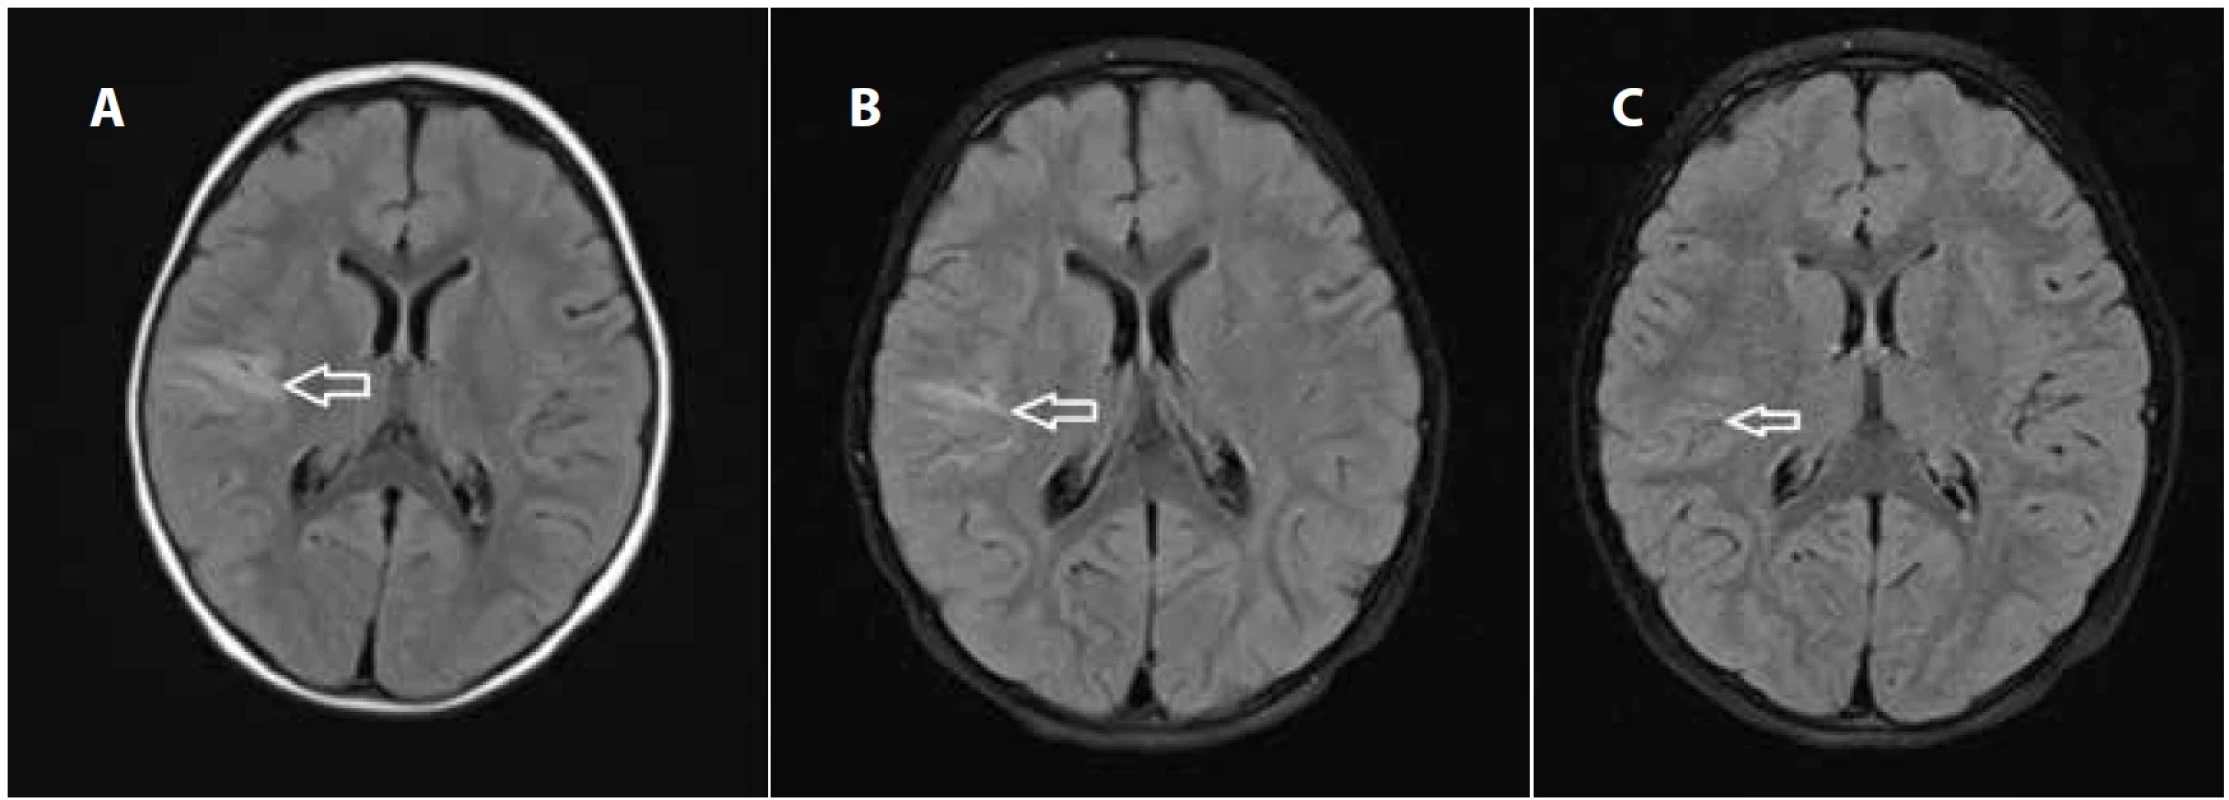 Magnetická rezonance, T2 Flair skeny: a) vstupní – axiálně s T2 hypersignálním lemem juxtakortikálně až kortikálně na rozhraní
gyrus frontalis inferior a gyrus temporalis superior vpravo; b) za 2 týdny s přetrváváním edému; c) za 4 měsíce s diskrétními
reziduálními gliotickými změnami v místě původní ischémie.
Fig. 2. Magnetic resonance imaging, T2 Flair axial scan: a) initially T2 hypersignal area juxtacortically to cortically at the interface of
the inferior frontal gyrus and the superior temporal gyrus on the right side b) after two weeks with the persistence of oedema and
gliosis; c) after four months with discrete residual gliotic changes at the site of the original ischemia.